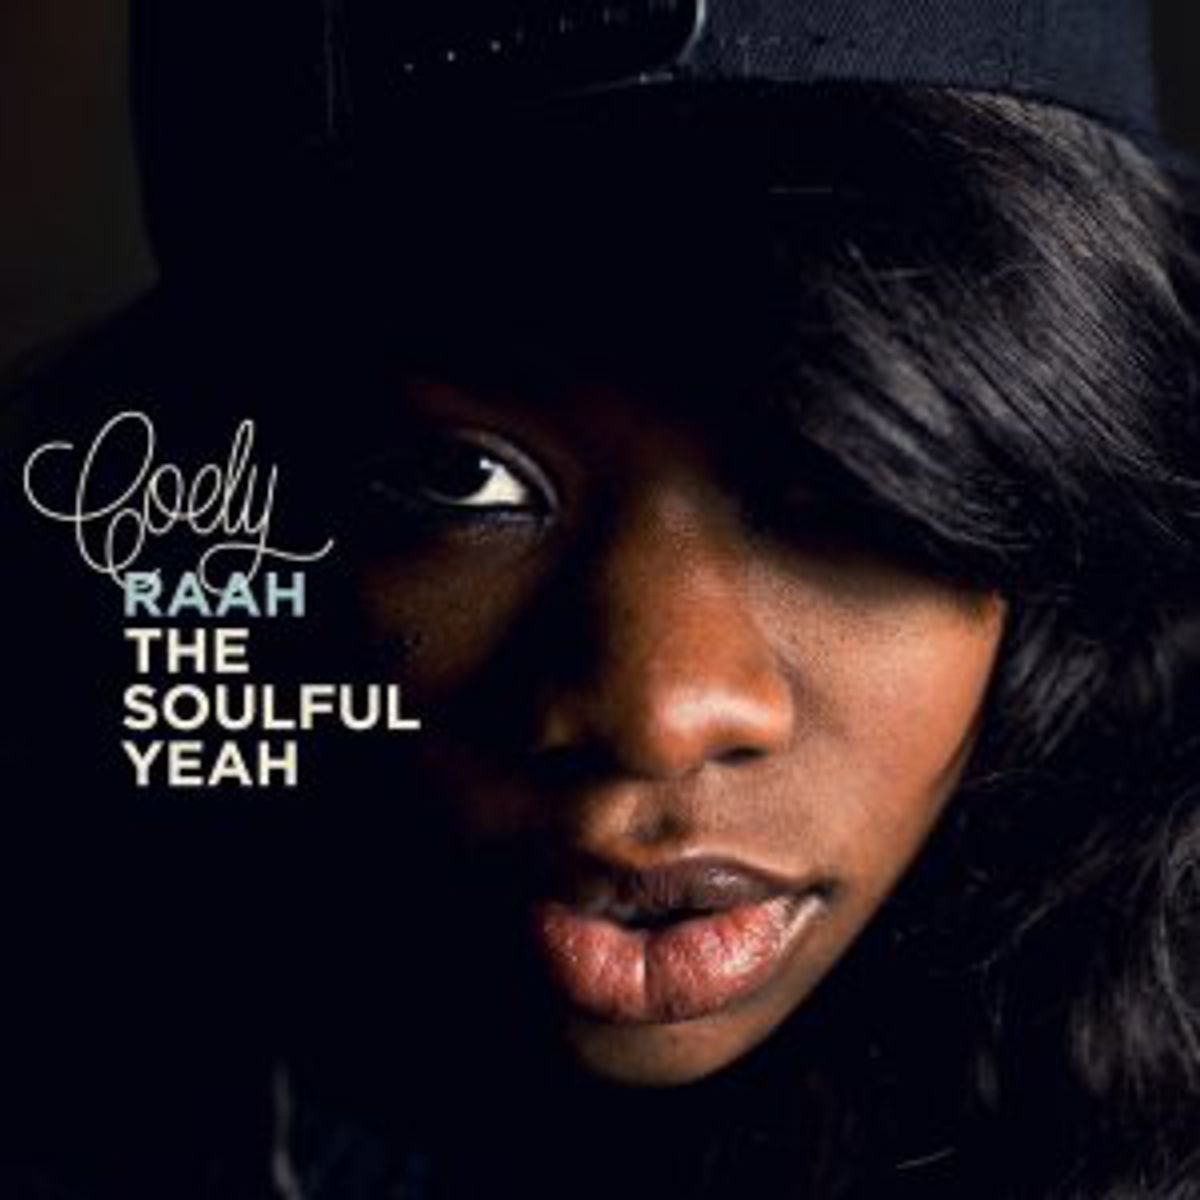 Coely - 'Raah The Soulful Yeah'